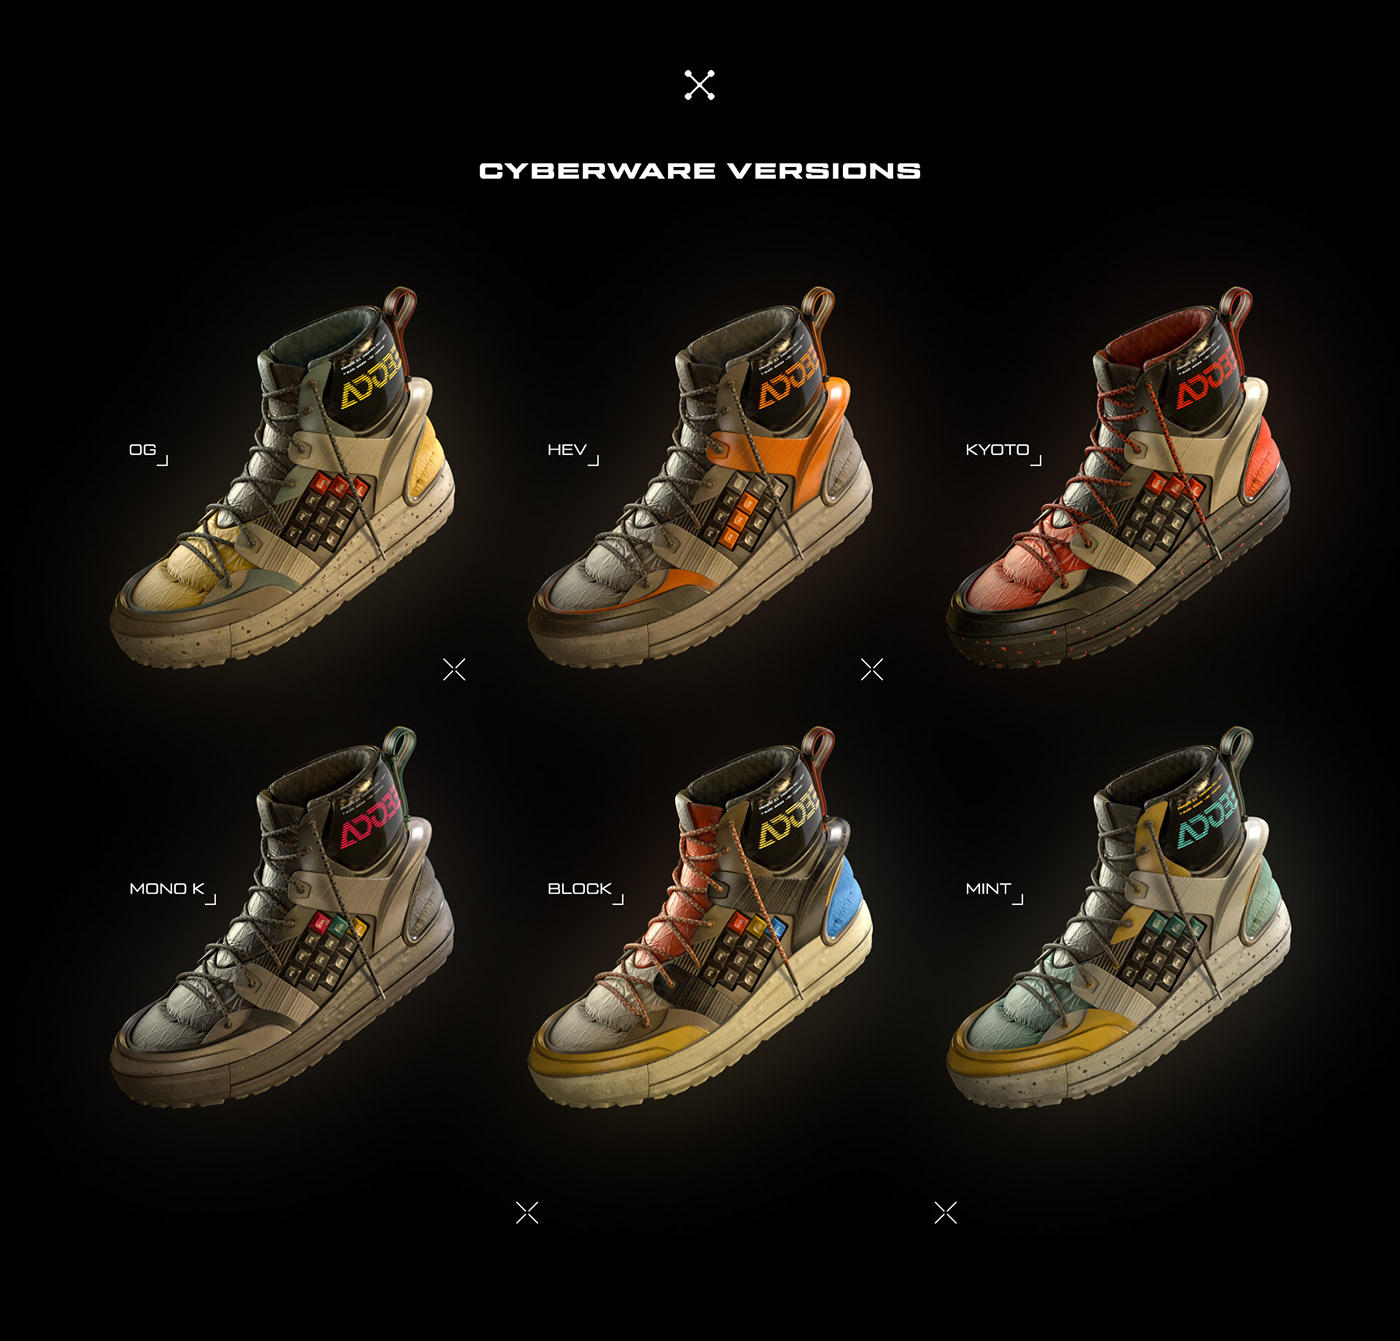 3D footwear Nike Render shoes sneakers Substance Painter texturing thegreatshoecase featured